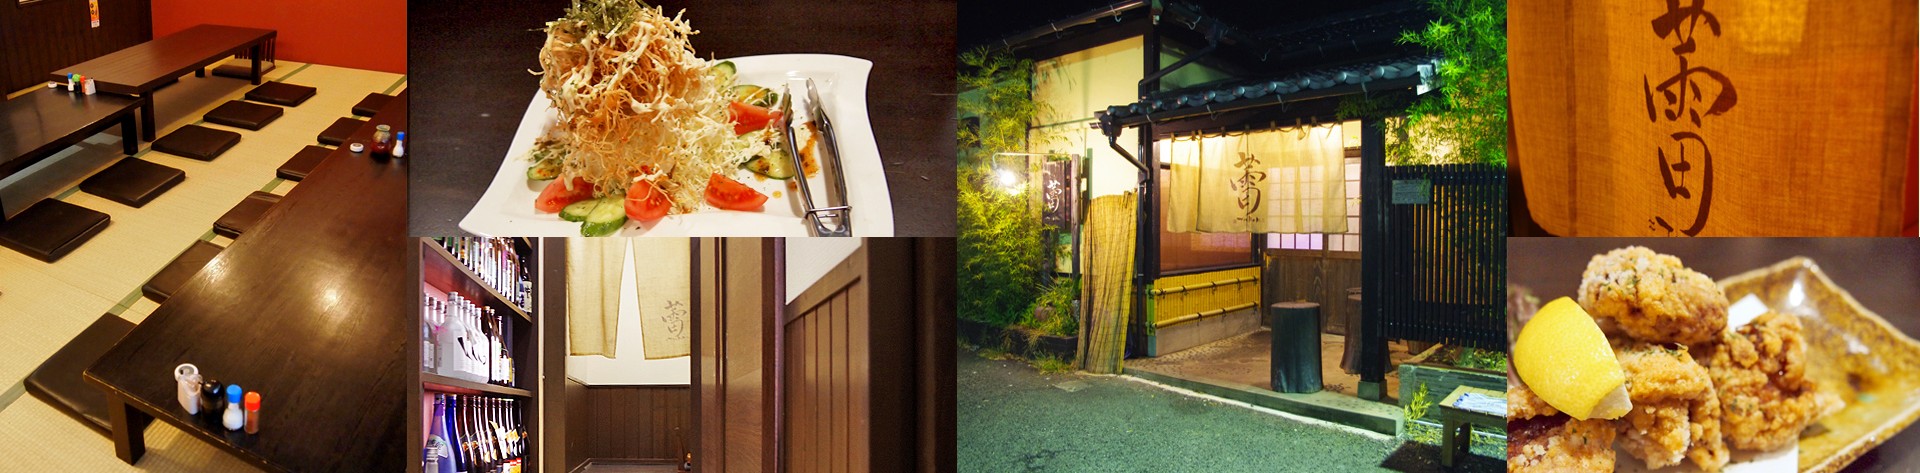 久留米市にある居酒屋、蕾では、その日に仕入れた新鮮な食材を ご用意しております。